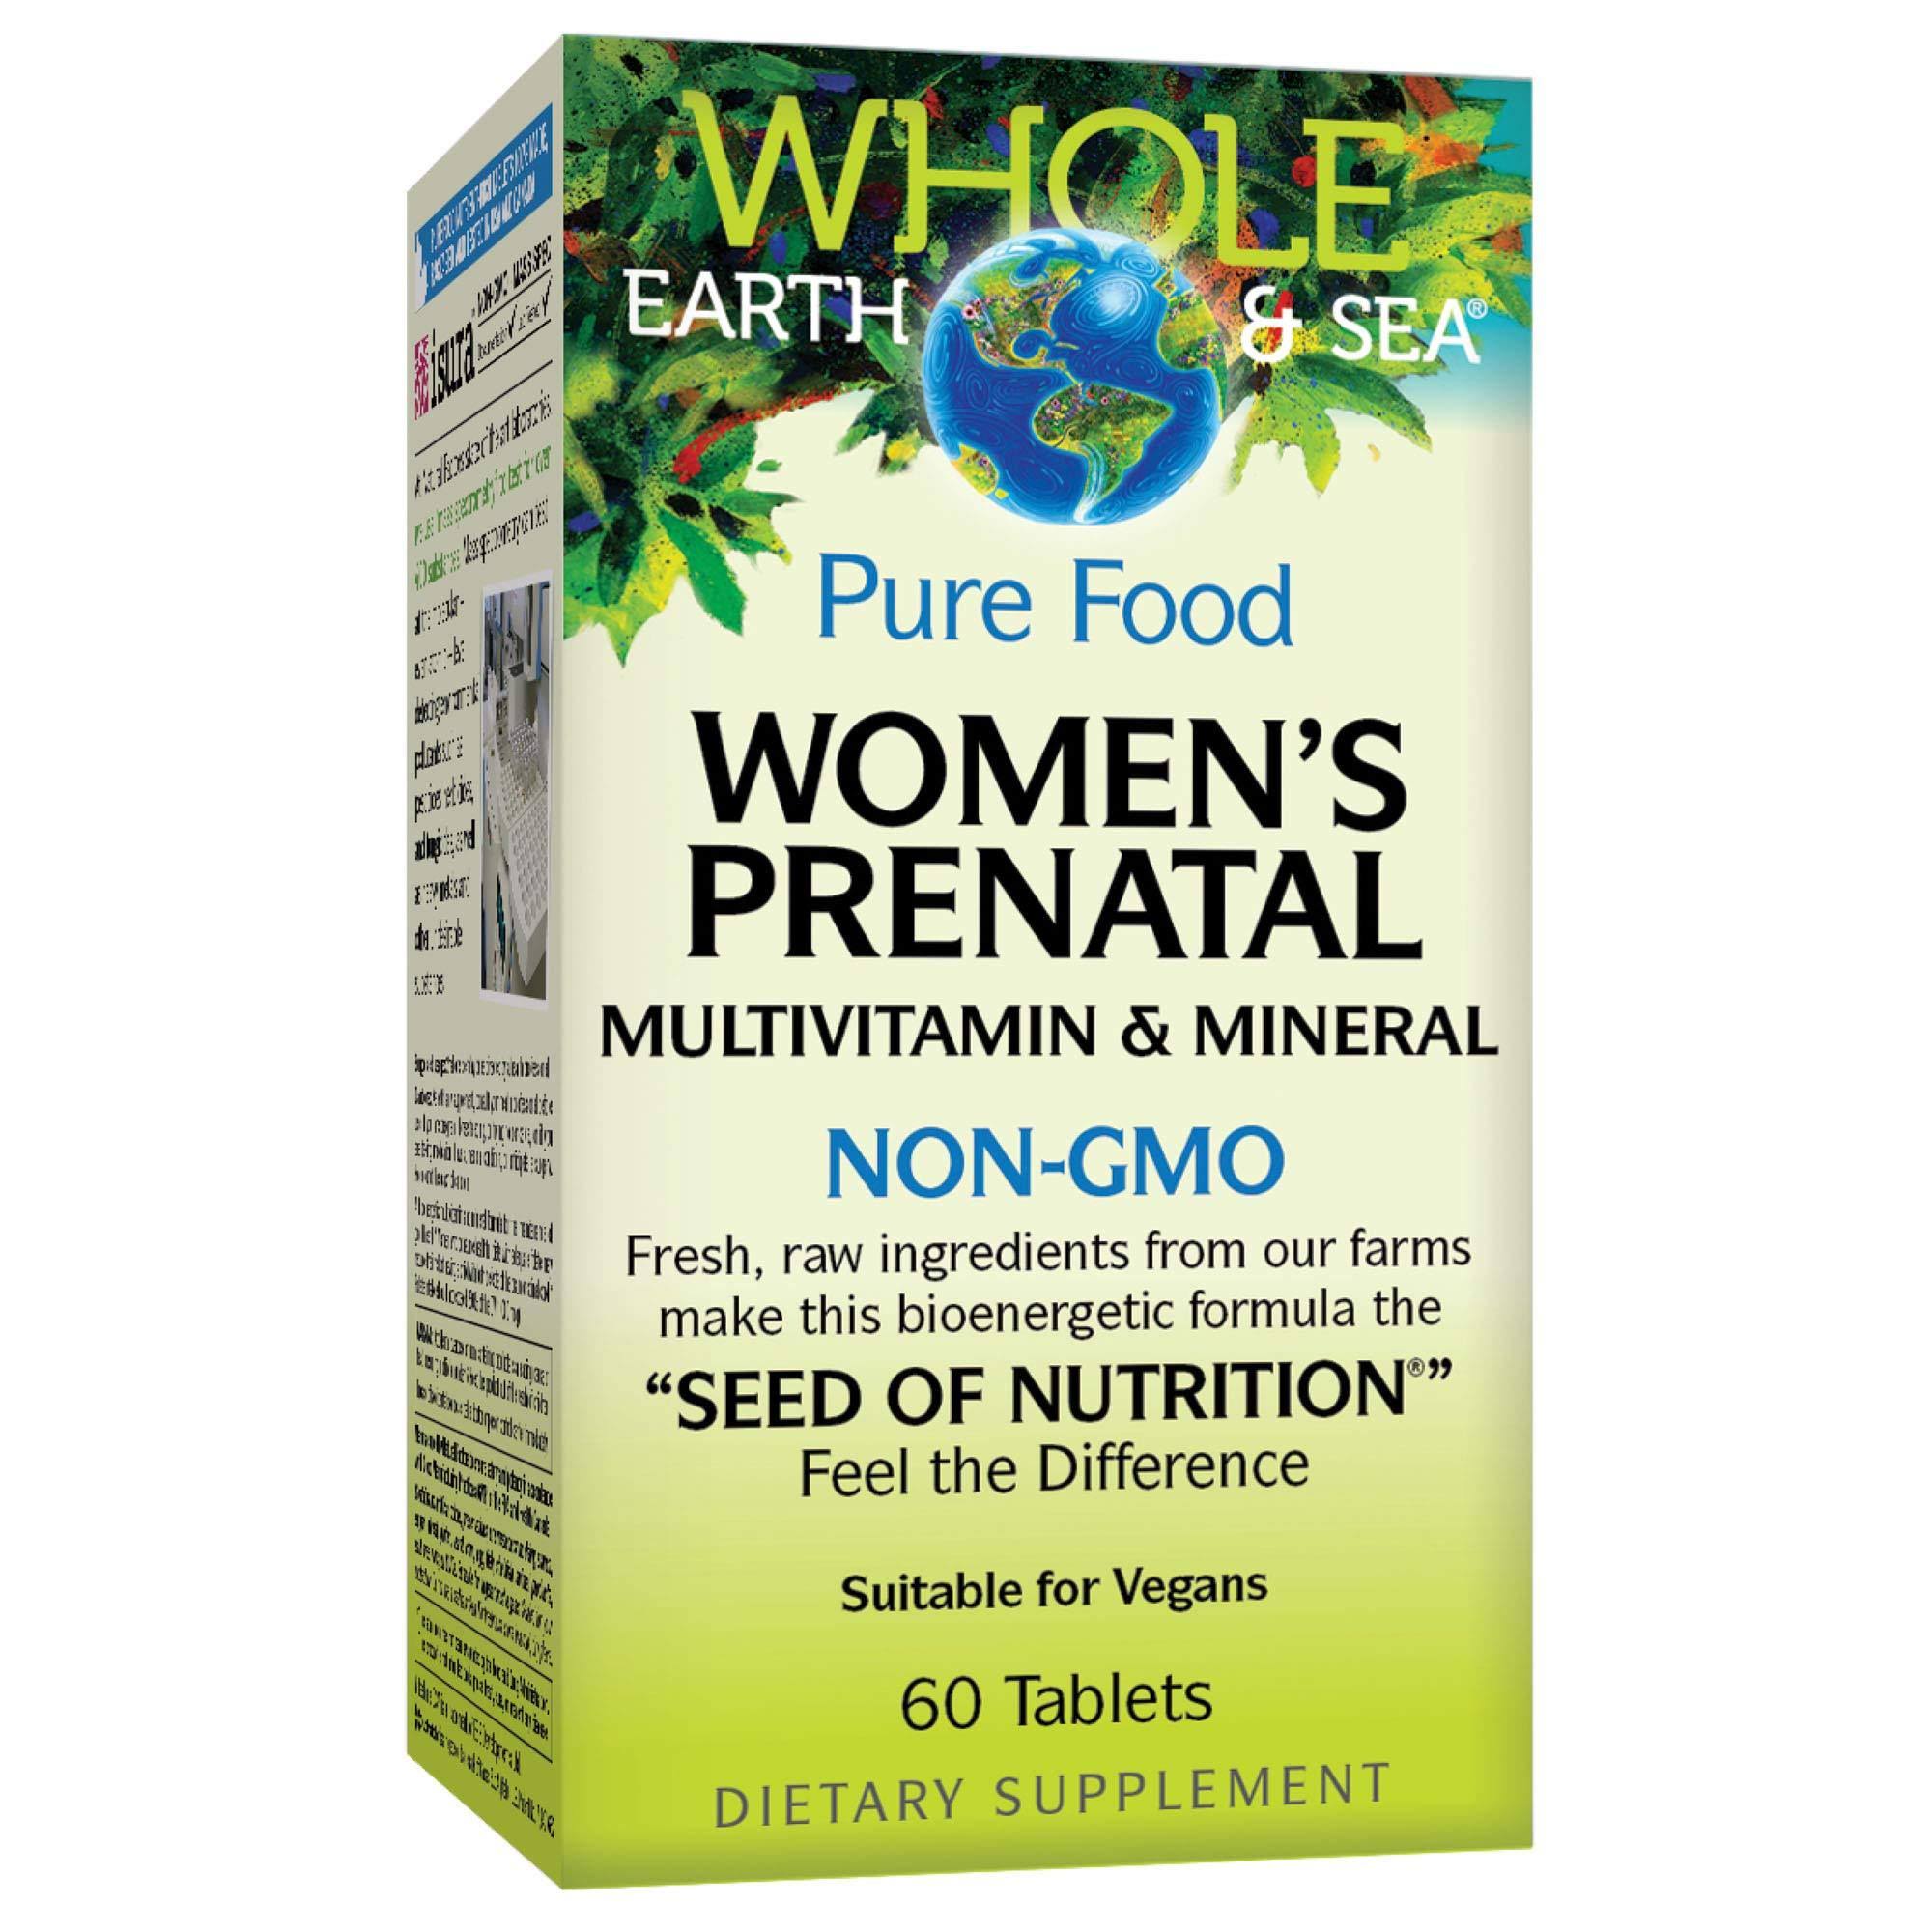 Whole Earth & Sea Women's Prenatal Multivitamin & Mineral, 60 Tablets